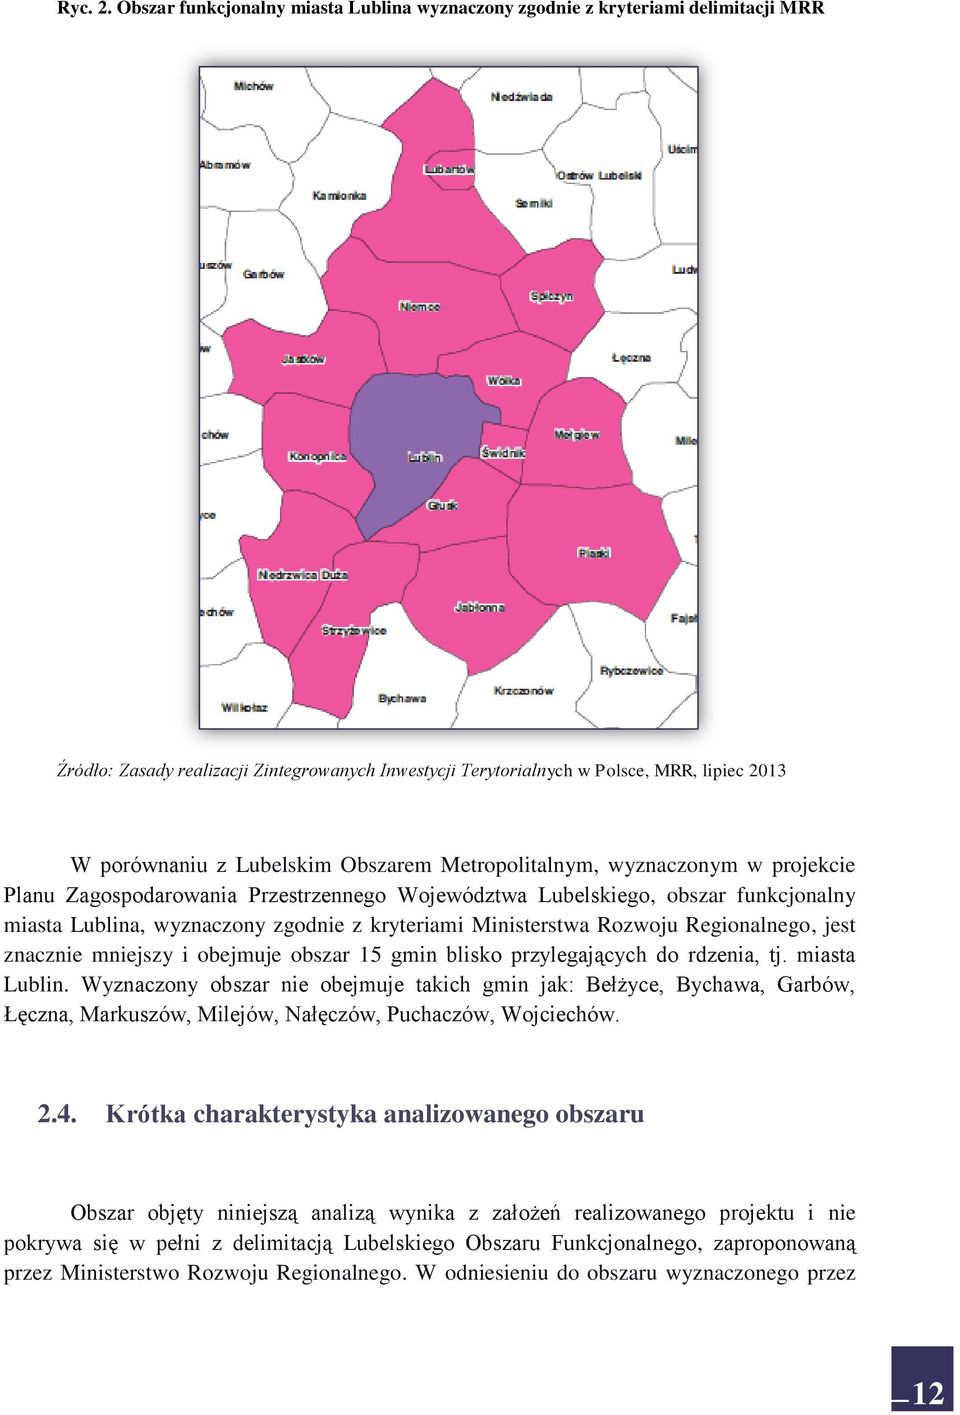 Lubelskim Obszarem Metropolitalnym, wyznaczonym w projekcie Planu Zagospodarowania Przestrzennego Województwa Lubelskiego, obszar funkcjonalny miasta Lublina, wyznaczony zgodnie z kryteriami